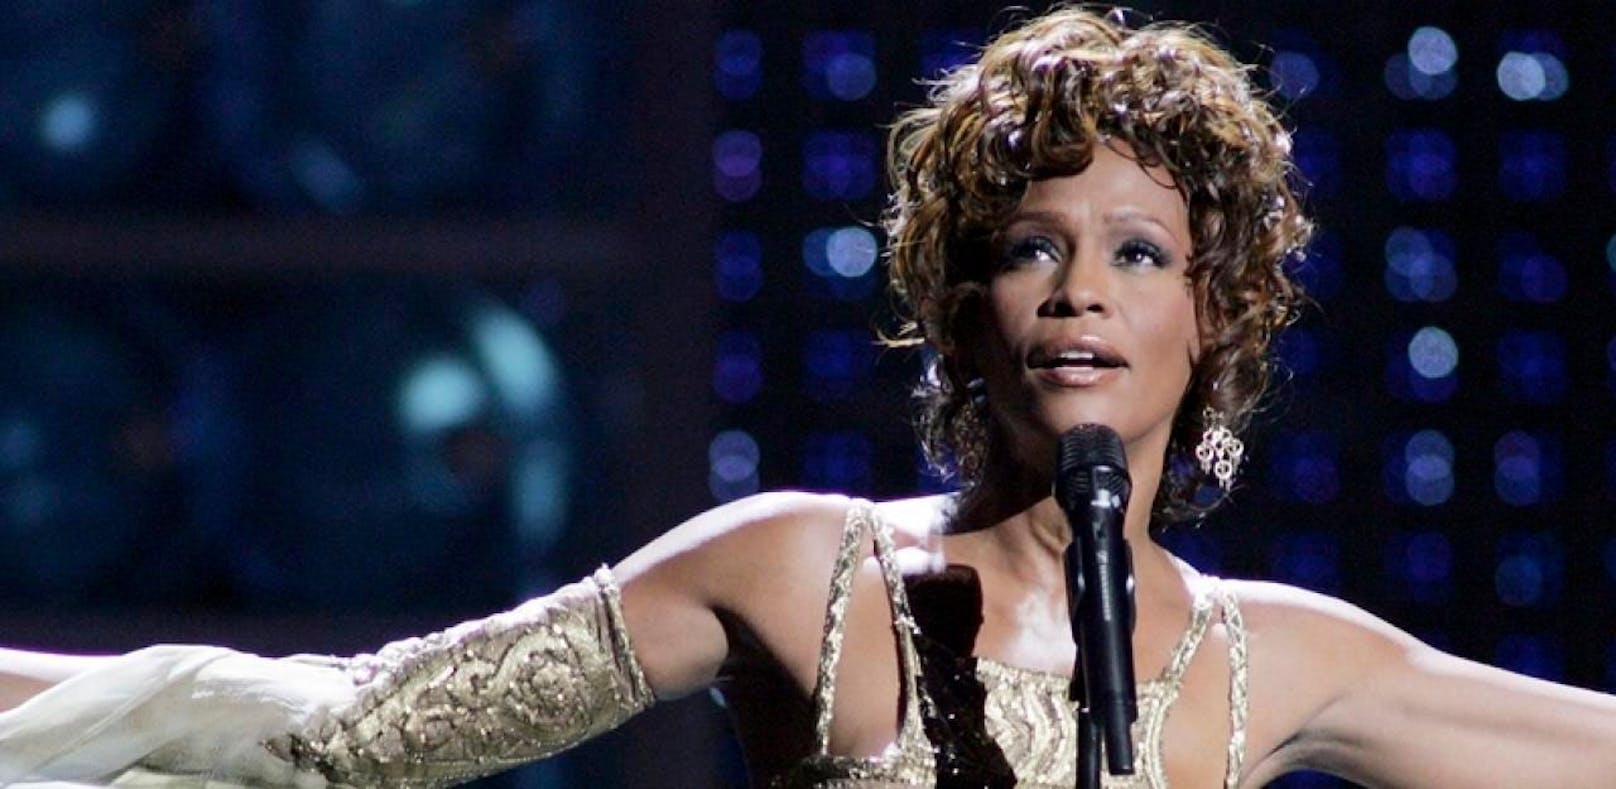 Hatte Whitney Houston ein Verhältnis mit einer Frau?